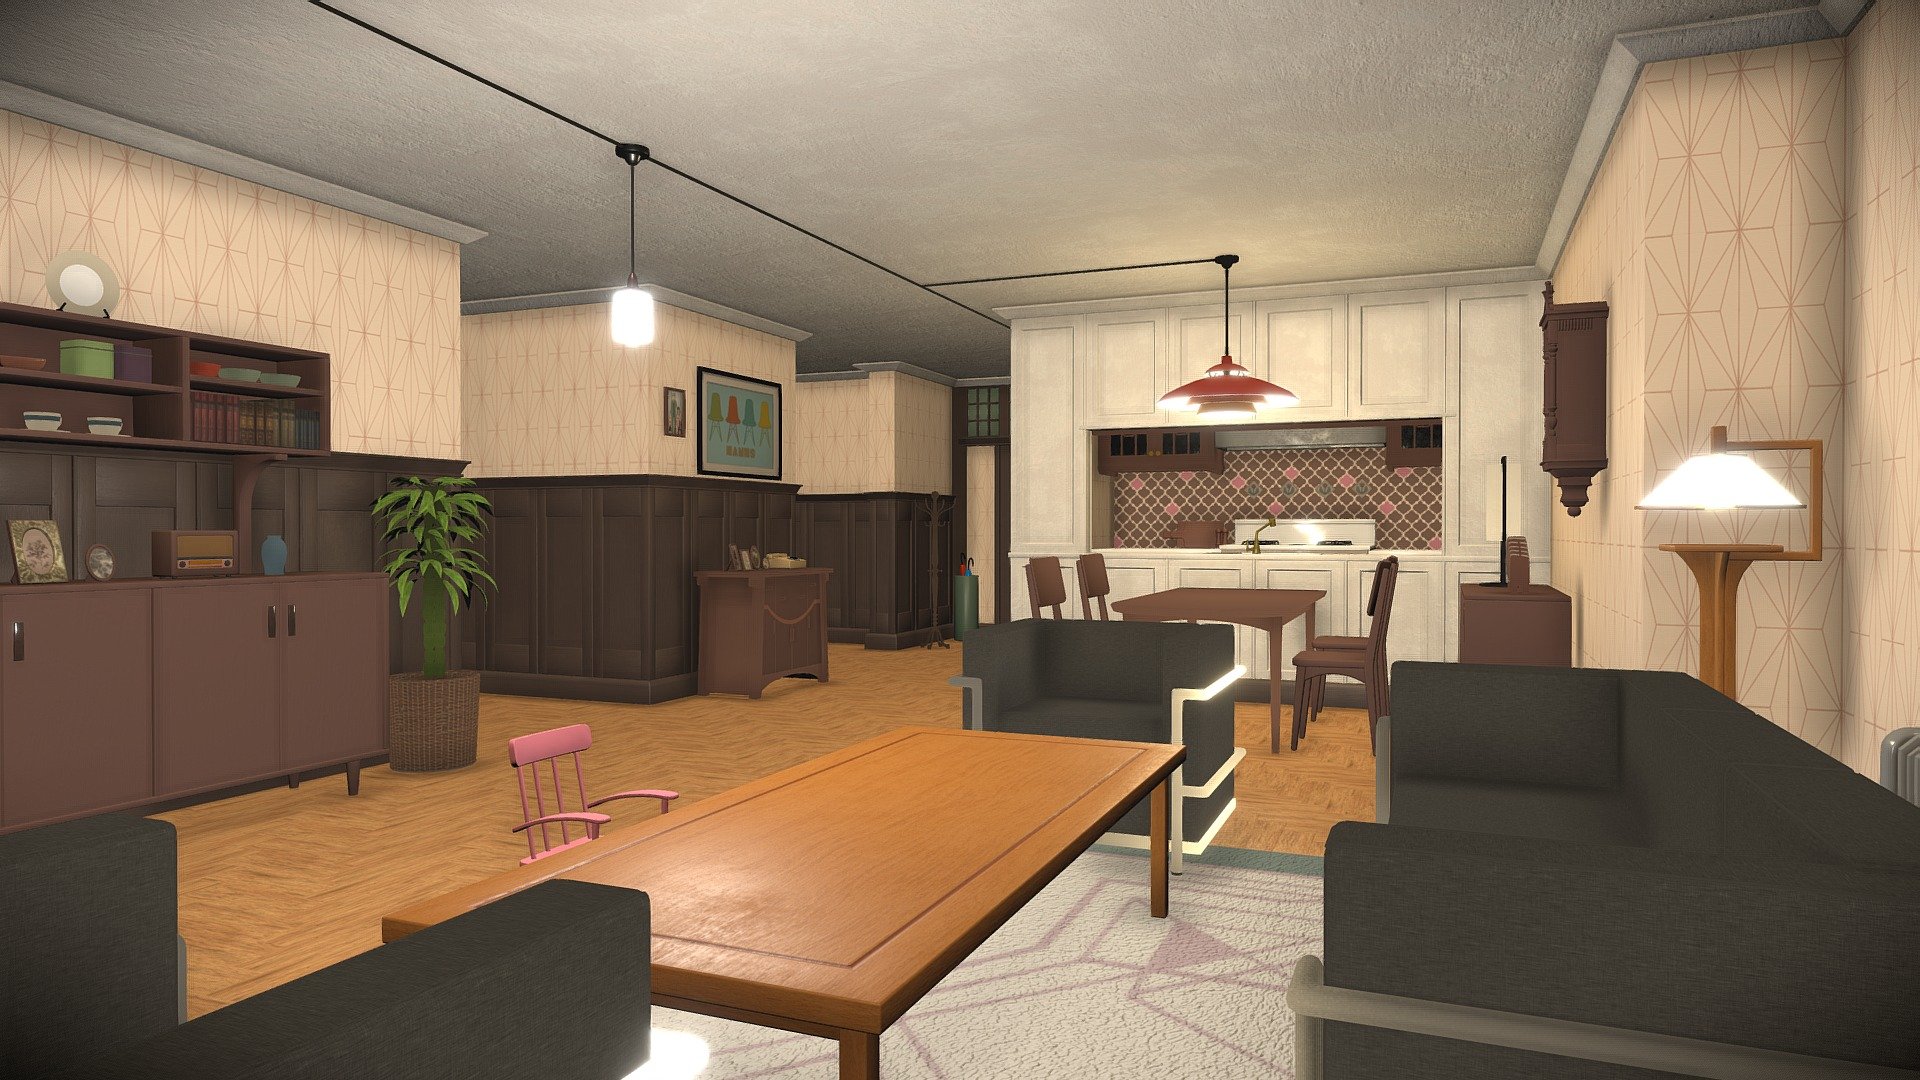 Spy X Family Apartment 3D model có thể đem đến cho bạn trải nghiệm thực tế về ngôi nhà đầy bí mật của các nhân vật trong truyện. Tận hưởng không gian đầy cảm hứng và hoàn toàn tùy chỉnh theo sở thích của bạn.